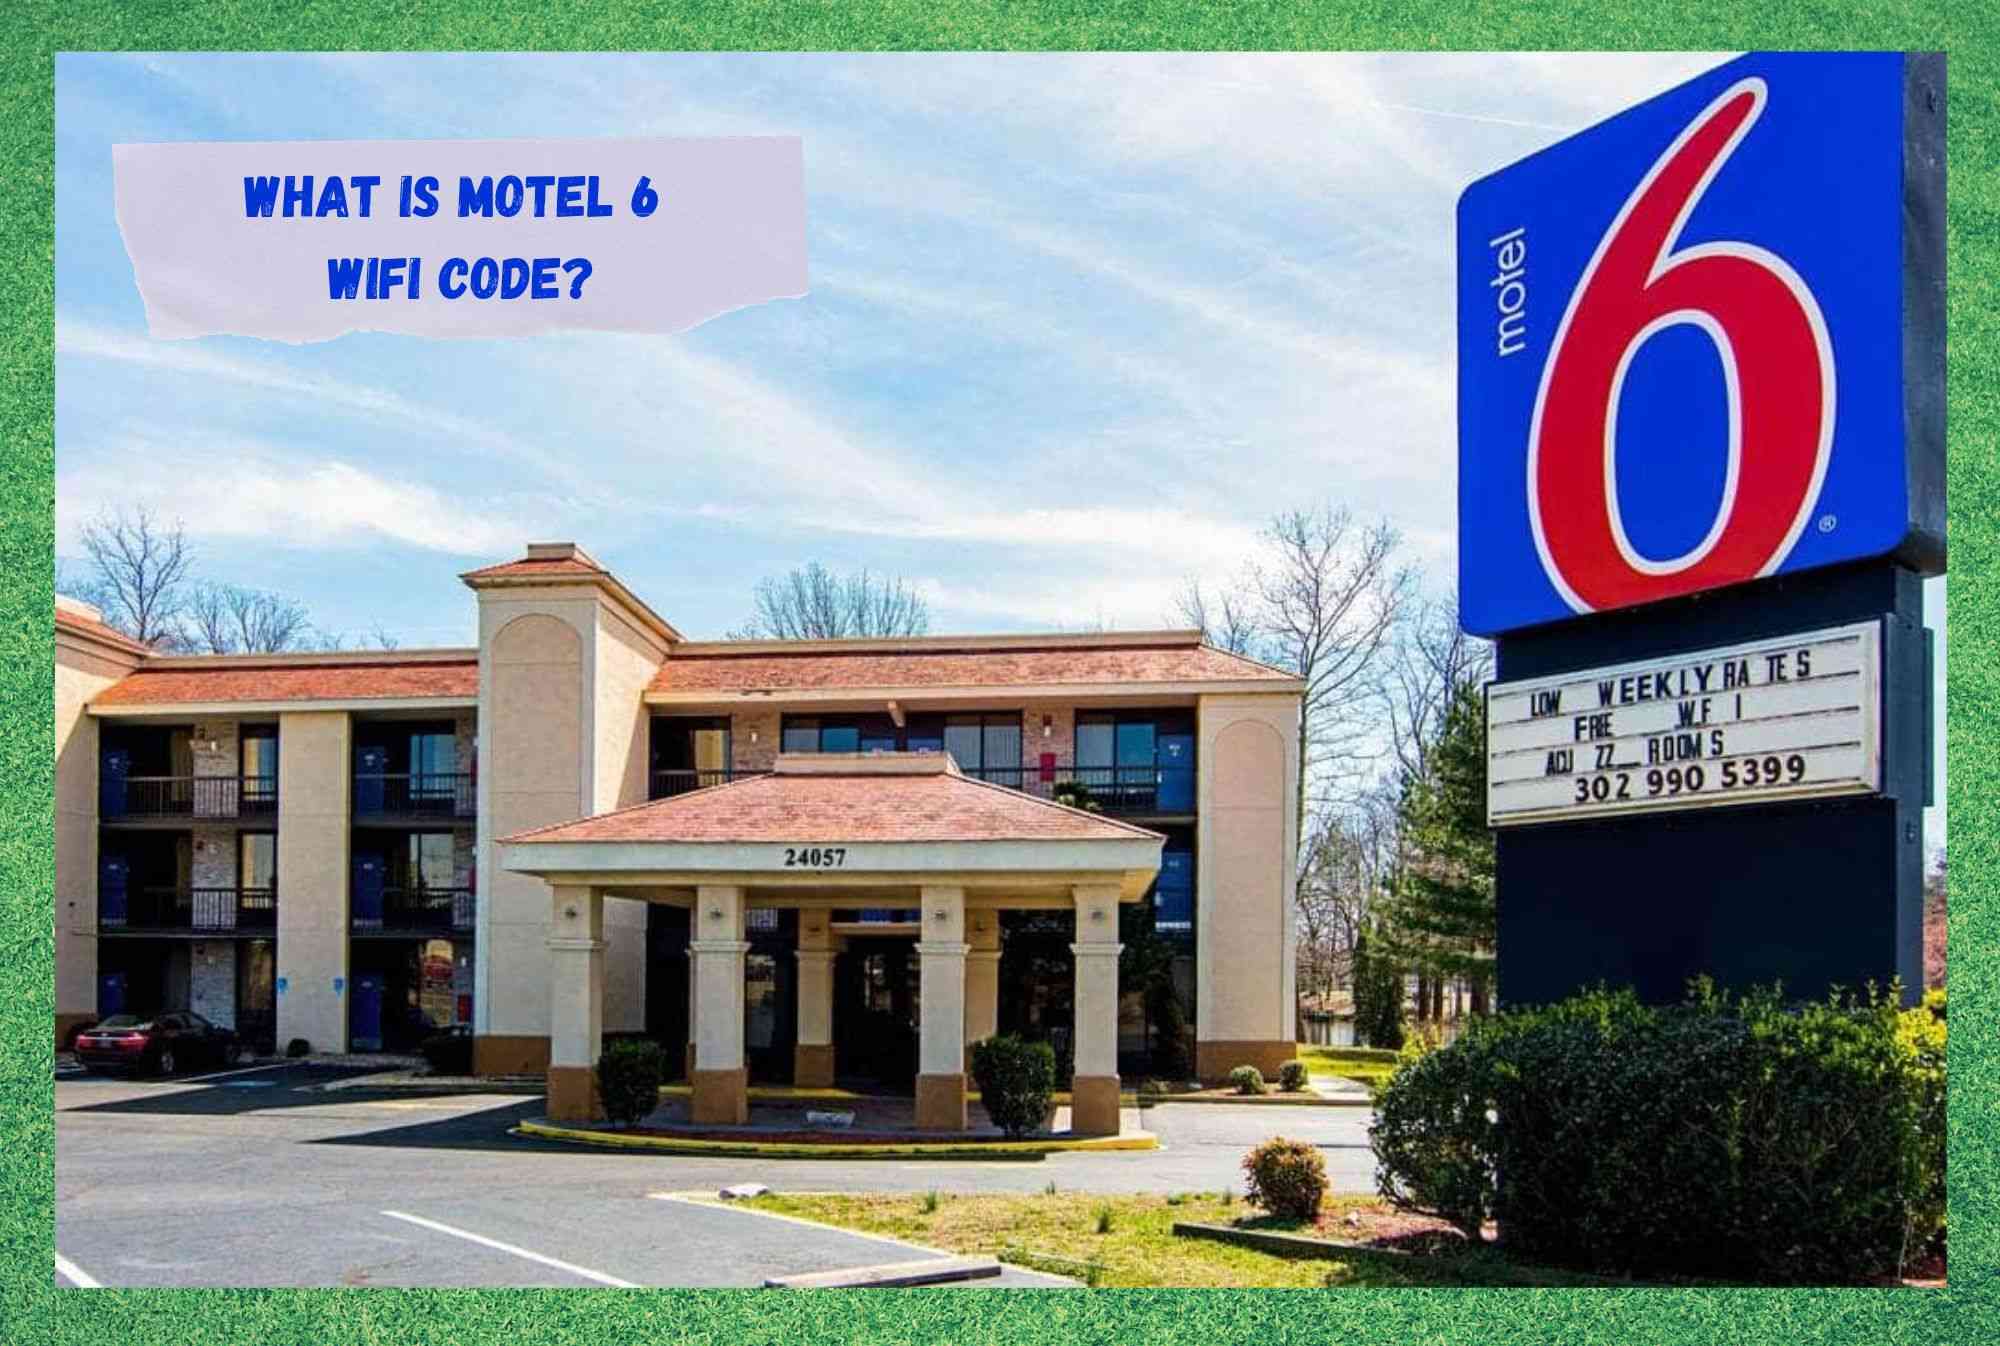 Motel 6 WiFi код гэж юу вэ?